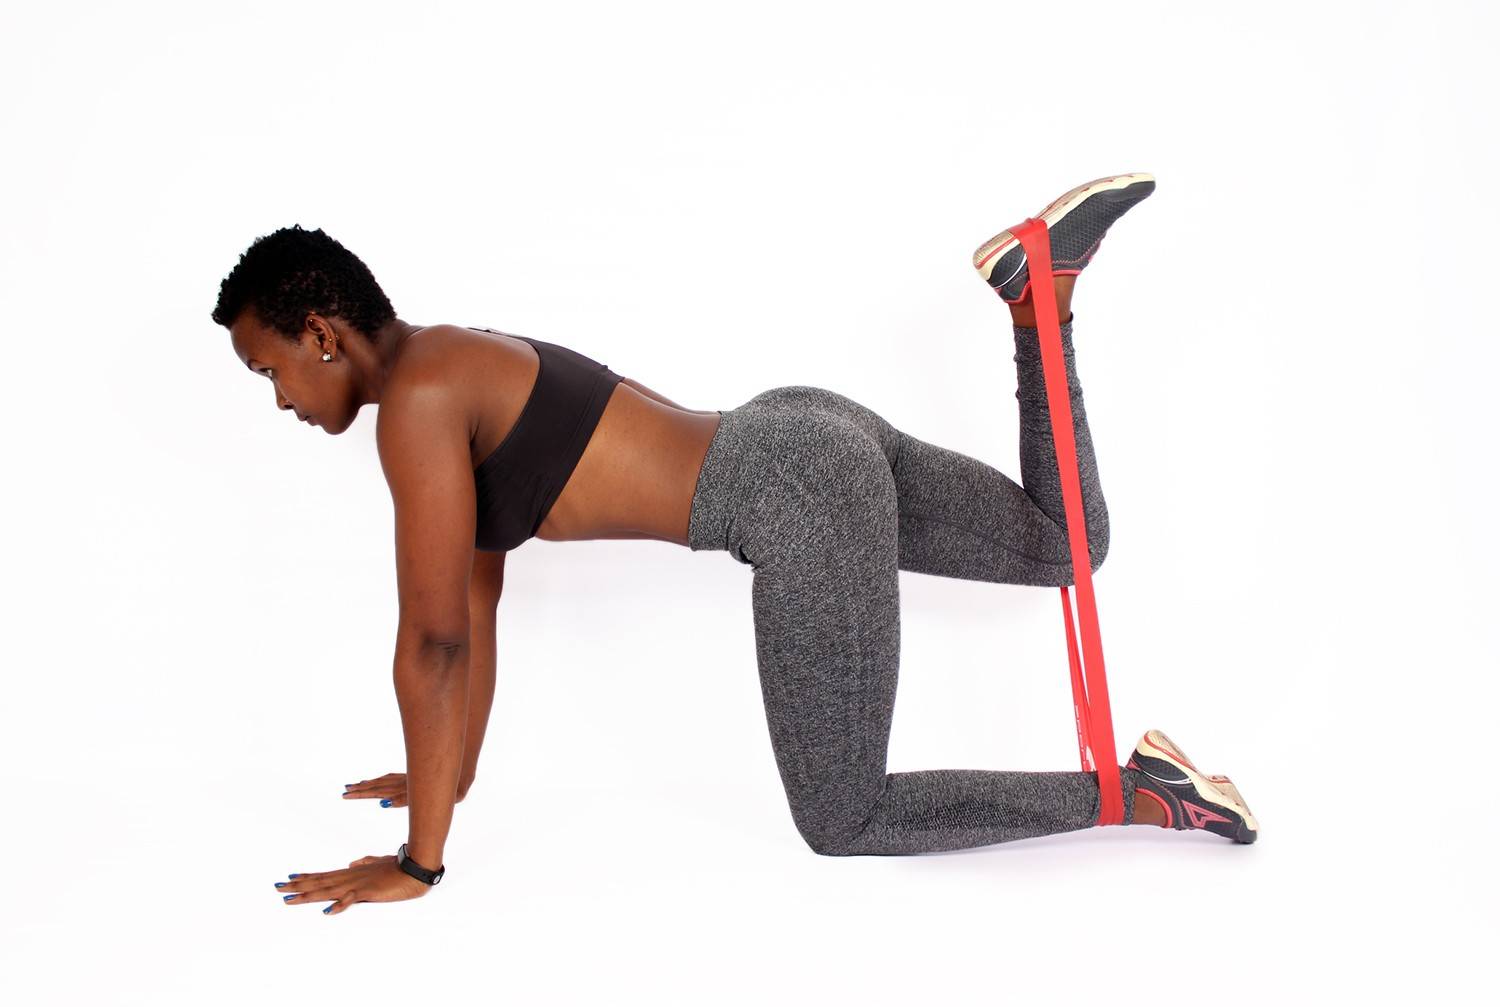 Упражнения для поддержания здоровья ваших ног и профилактики развития отеков нижних конечностей